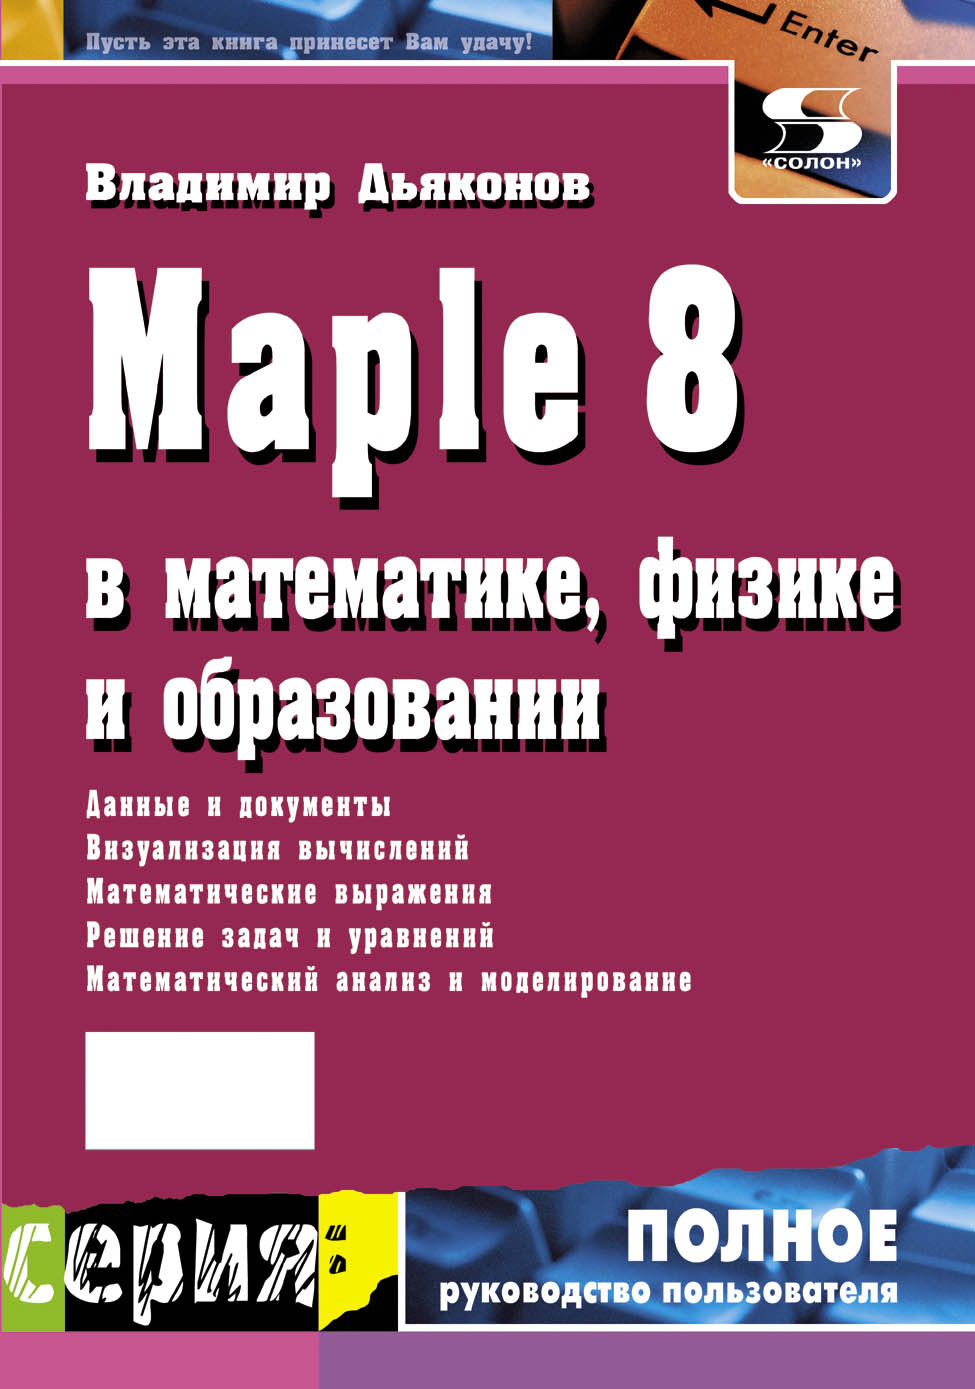 Книга Полное руководство пользователя Maple 8 в математике, физике и образовании созданная В. П. Дьяконов может относится к жанру математика, программы, руководства. Стоимость электронной книги Maple 8 в математике, физике и образовании с идентификатором 8333346 составляет 300.00 руб.